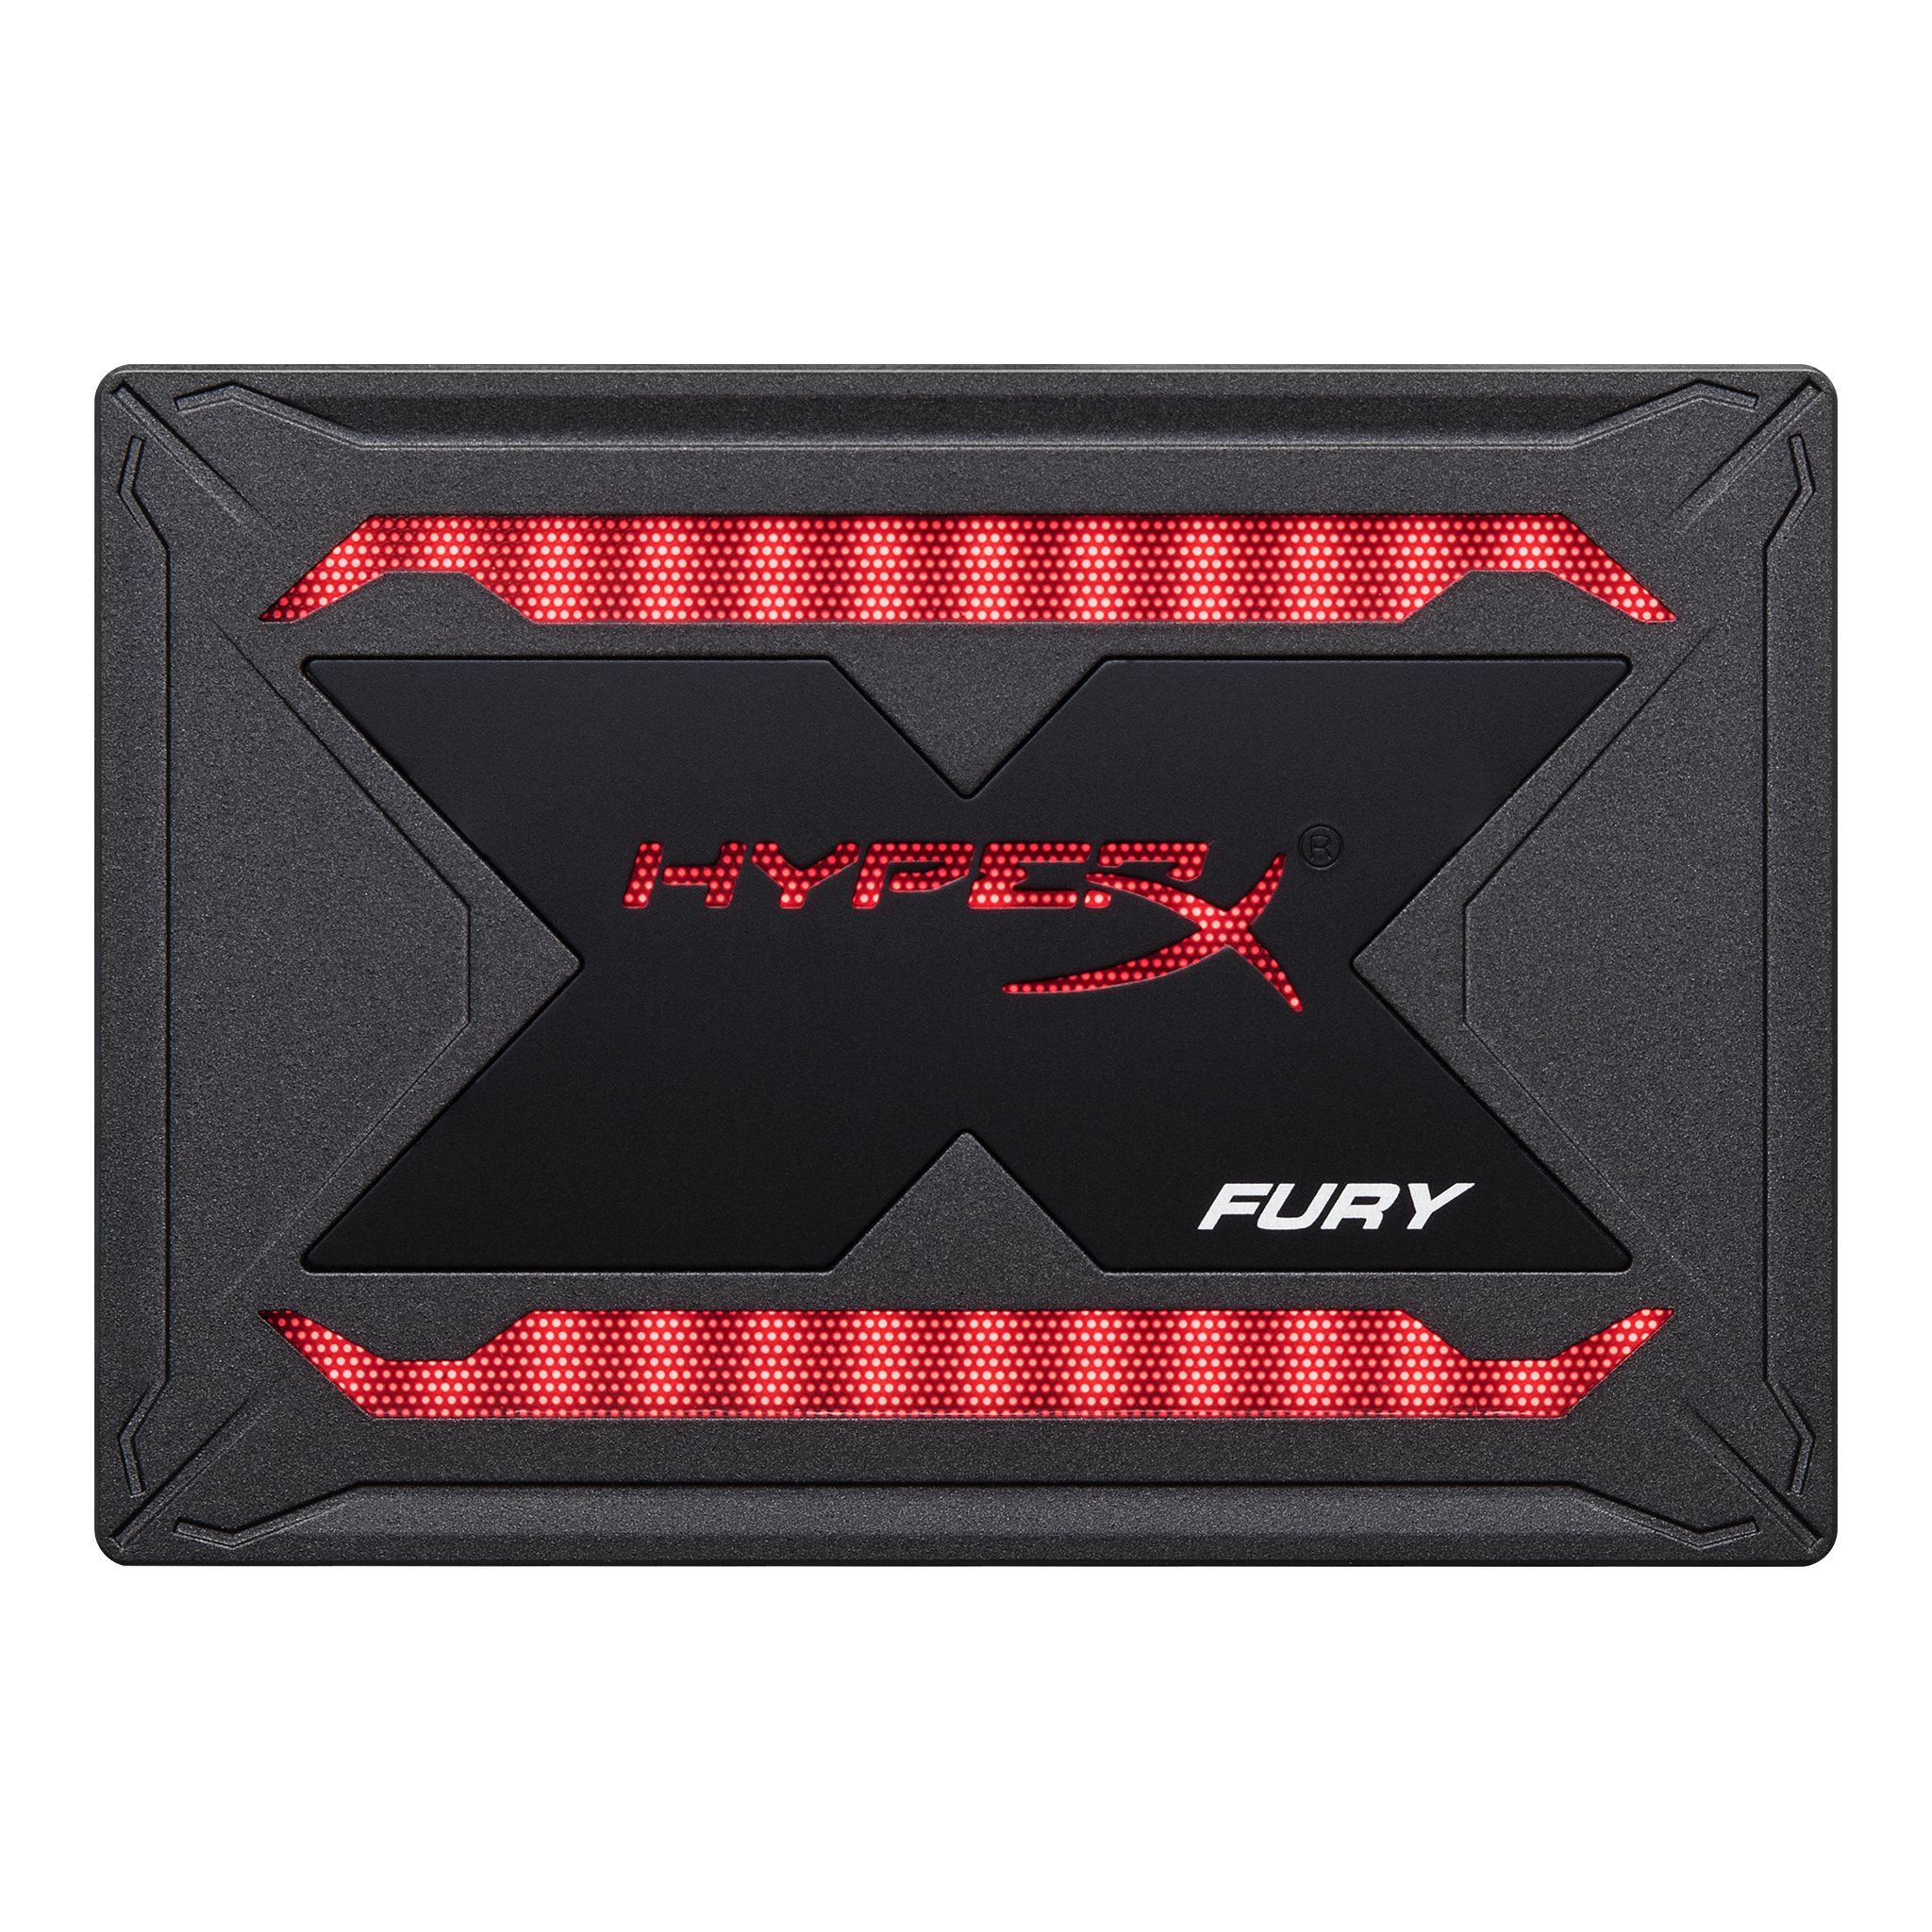 Hard Disk SSD Kingston HyperX Fury SHFR 960GB RGB Bundle Upgraded 2.5